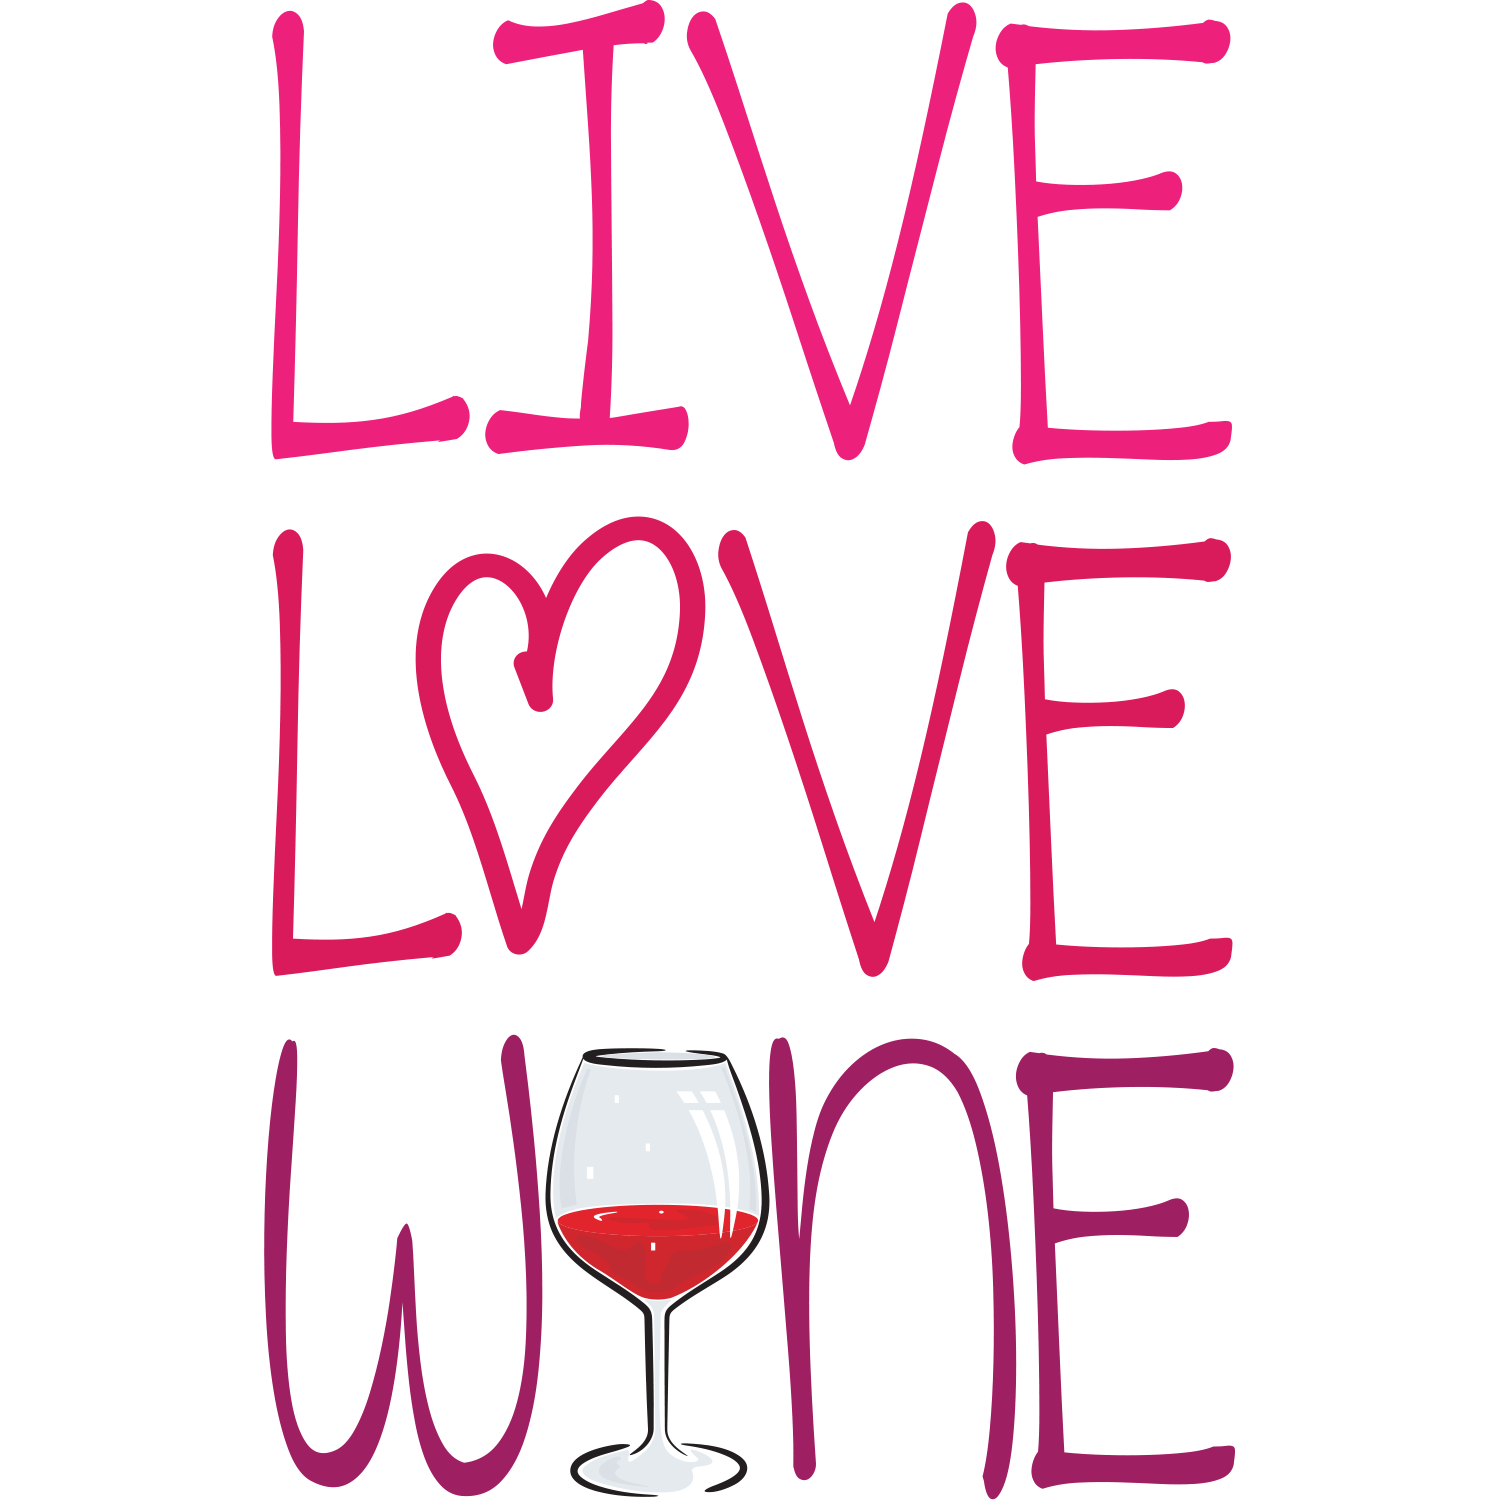 Logotipo Con Texto Love Wine Con Botella De Vino Con Flecha De Cupido Con Lineas En Fondo Gris Y